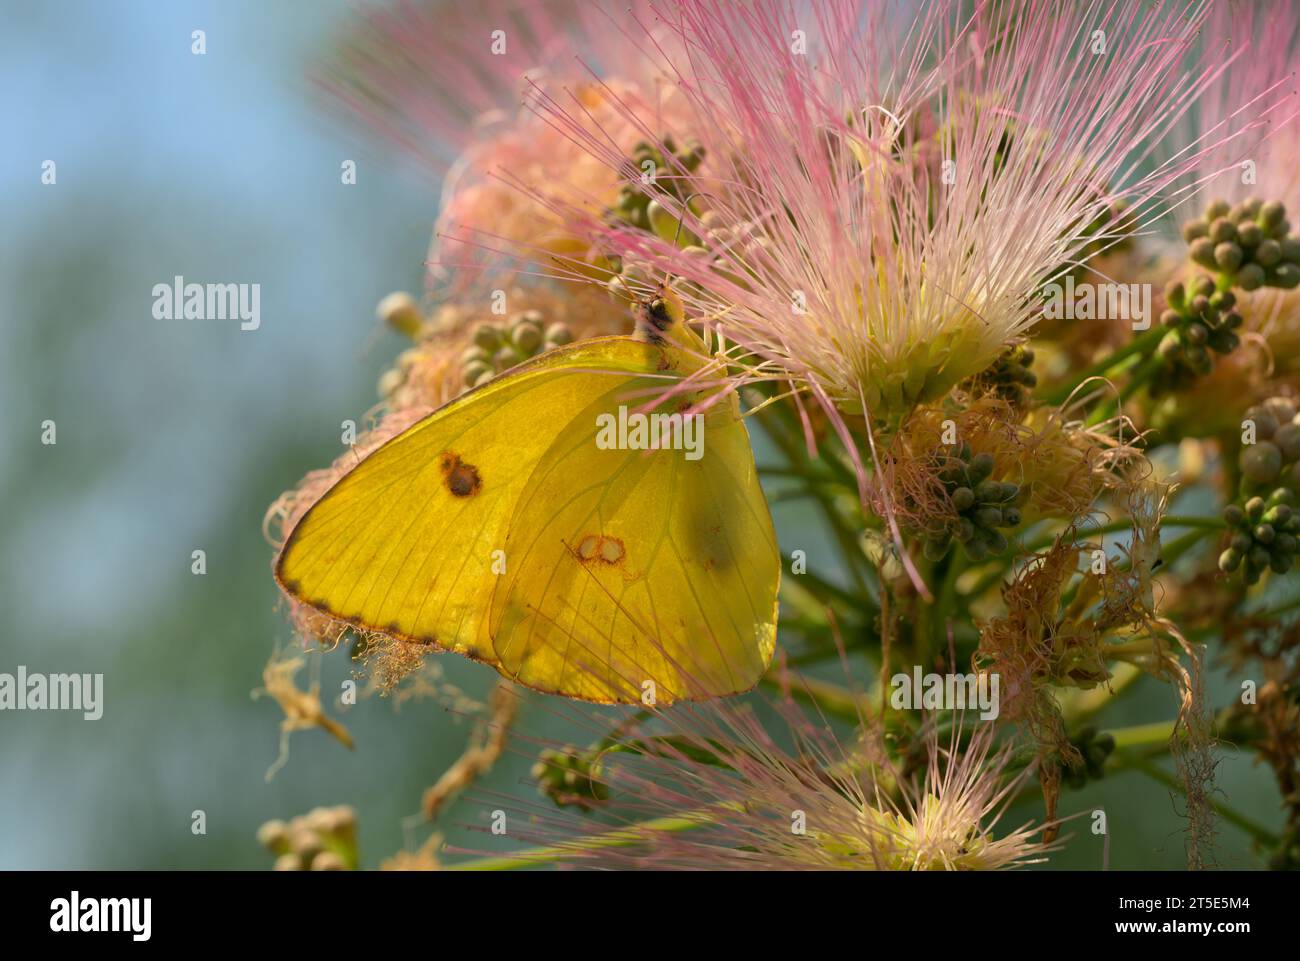 Farfalla zolfo senza nuvole di colore giallo brillante che si nutre di fiori sfocati rosa dell'albero di seta persiano Foto Stock